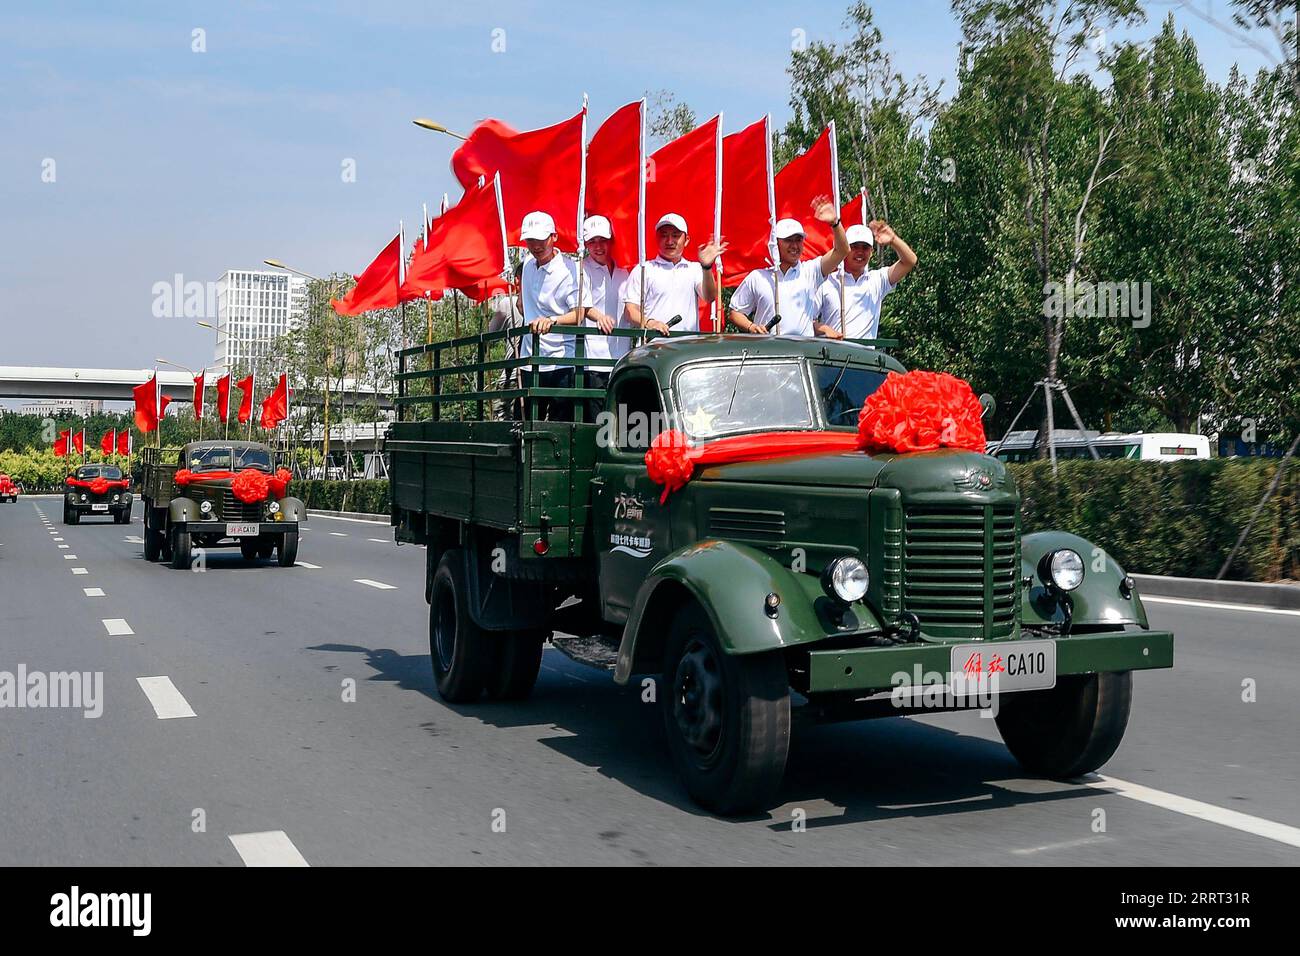 230627 -- CHANGCHUN, 27. Juni 2023 -- Eine Flotte von Jiefang-LKWs verschiedener Generationen paraden, um das bevorstehende 70-jährige Bestehen ihres Herstellers FAW Group in Changchun, nordöstliche Provinz Jilin, 26. Juni 2023 zu feiern. FAW Jiefang ist die Lkw-Tochter des führenden chinesischen Automobilherstellers FAW Group, einem 1953 in Changchun gegründeten Staatsunternehmen. Es wird auch als Wiege der chinesischen Automobilindustrie bezeichnet. CHINA-JILIN-CHANGCHUN-FAW-JUBILÄUMSFEIER CN XUXCHANG PUBLICATIONXNOTXINXCHN Stockfoto